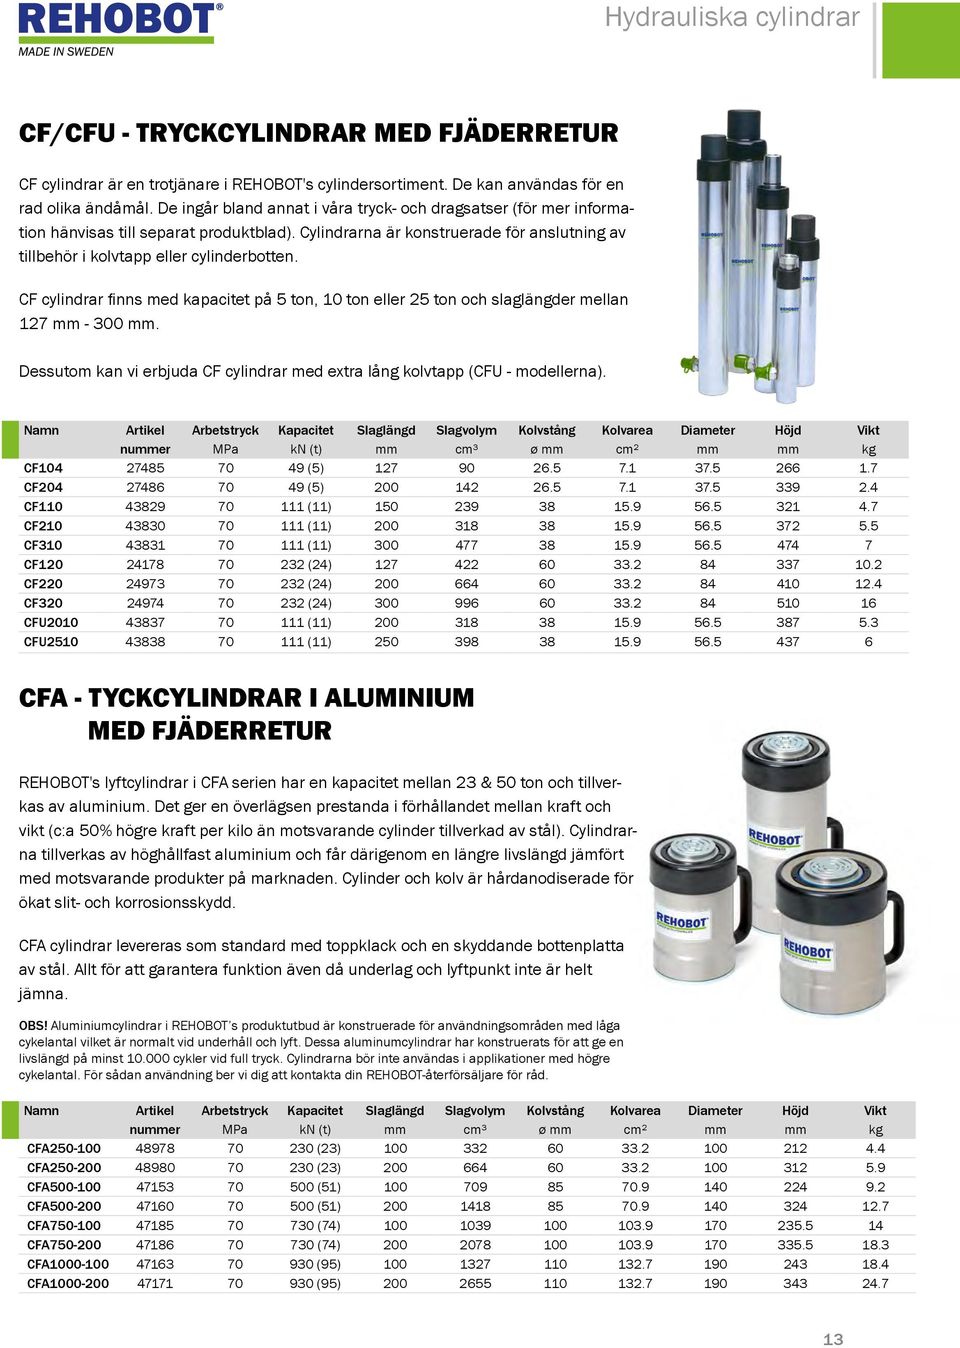 CF cylindrar finns med kapacitet på 5 ton, 10 ton eller 25 ton och slaglängder mellan 127 mm - 300 mm. Dessutom kan vi erbjuda CF cylindrar med extra lång kolvtapp (CFU - modellerna).